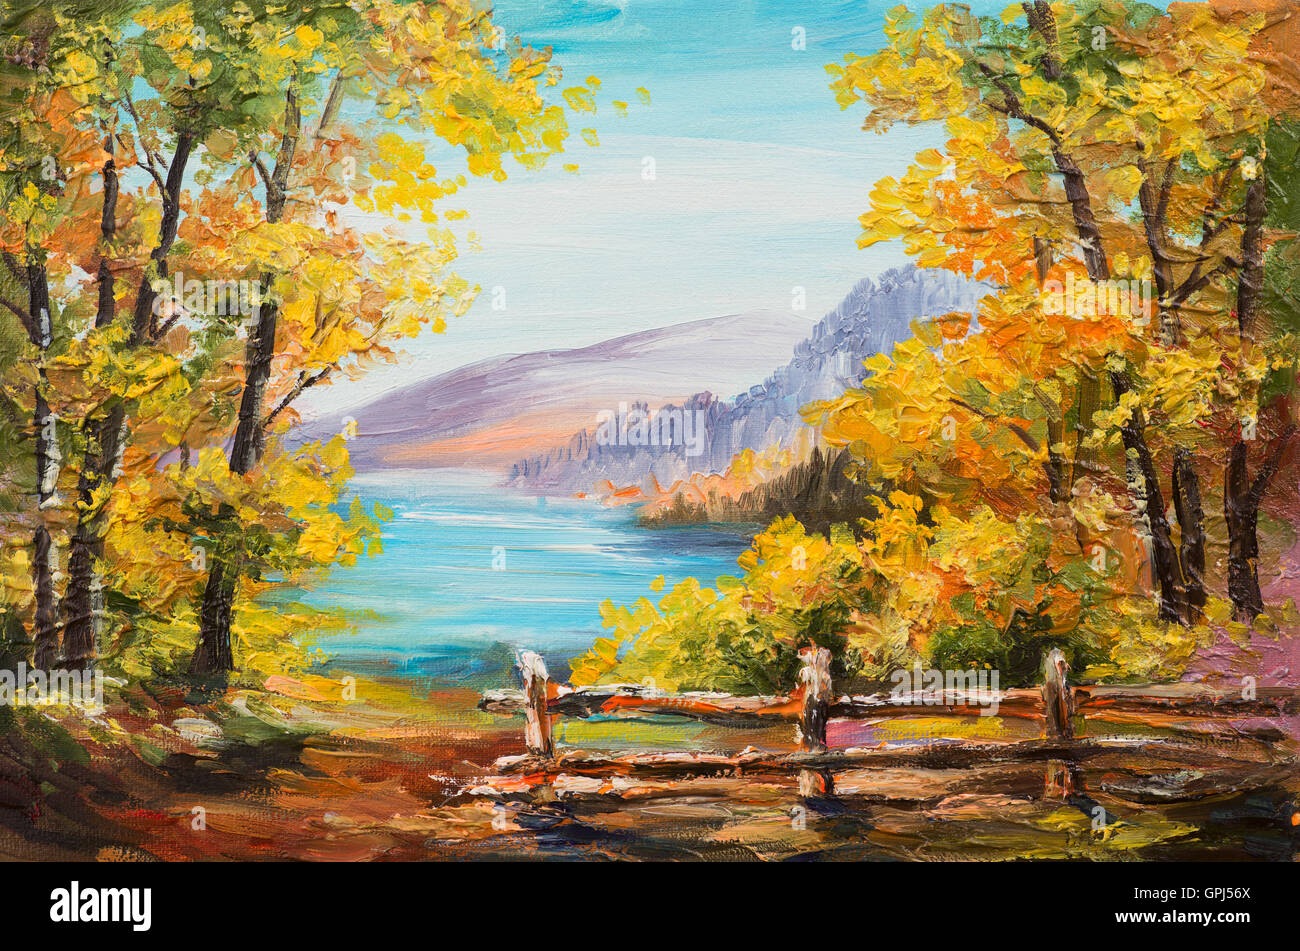 Ölgemälde Landschaft - bunten Herbstwald, Bergsee, Impressionismus Stockfoto